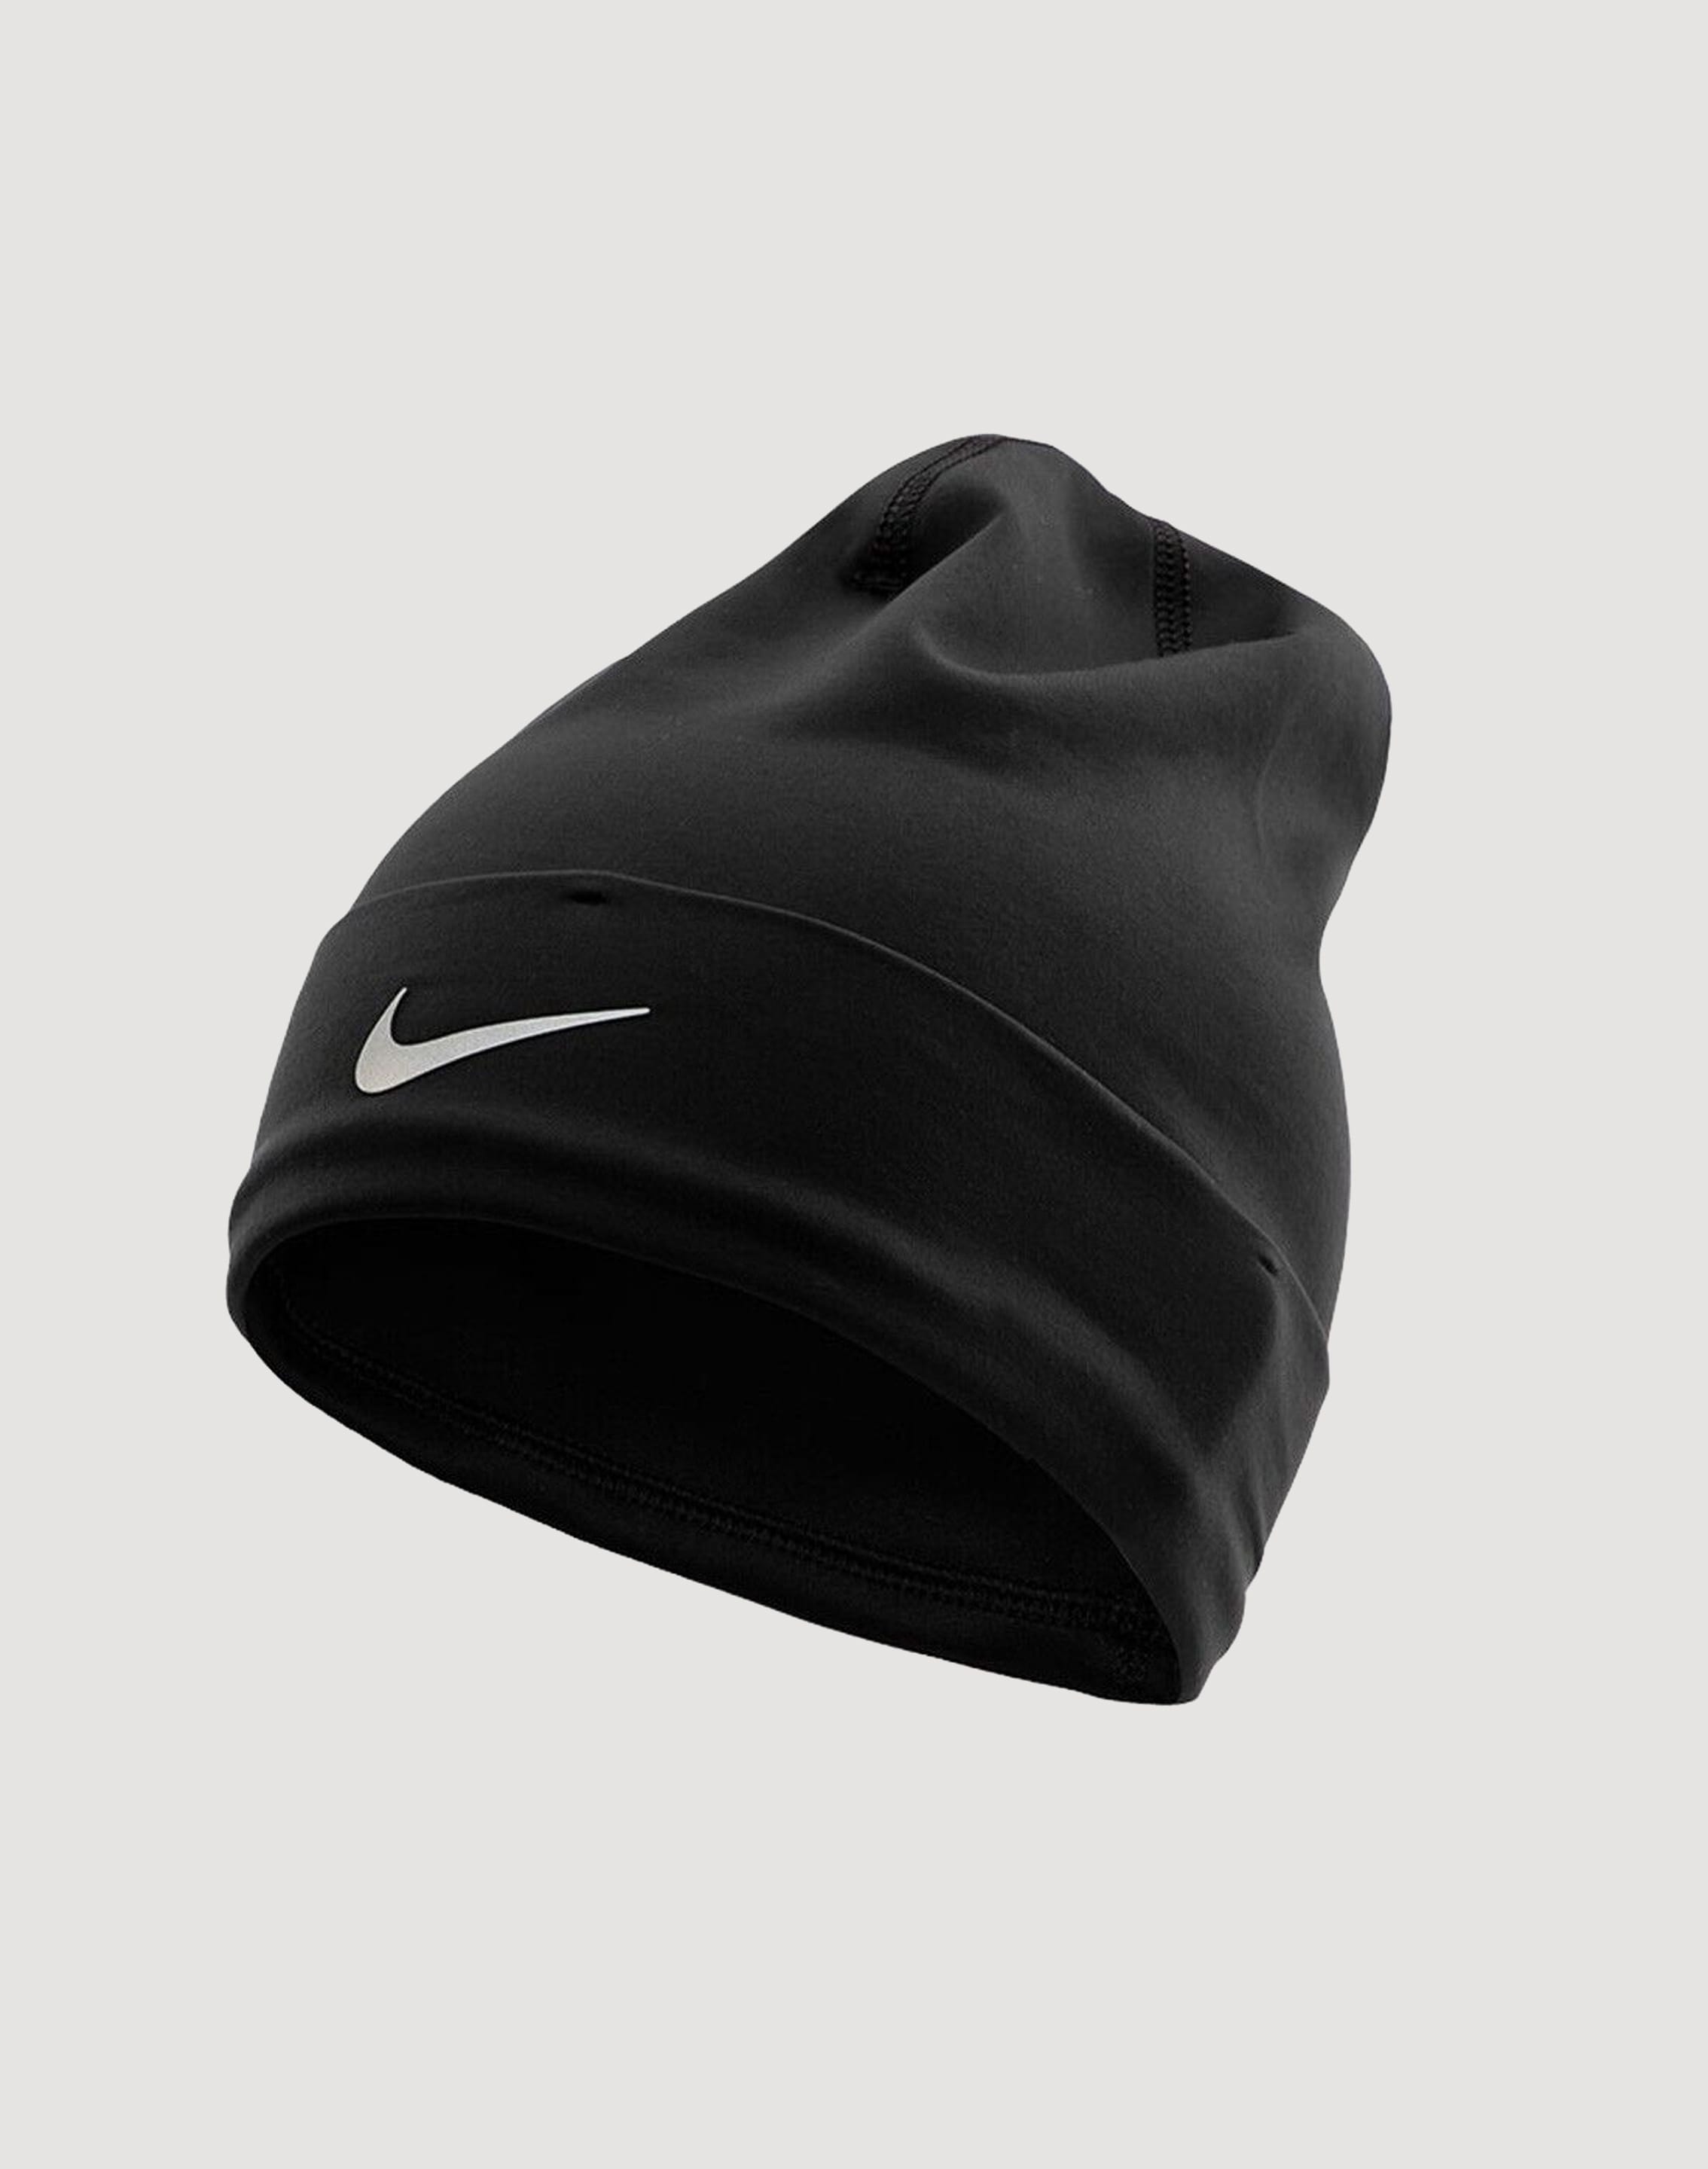 Nike U Nk Beanie Perf Cuffed Black DV3348 010